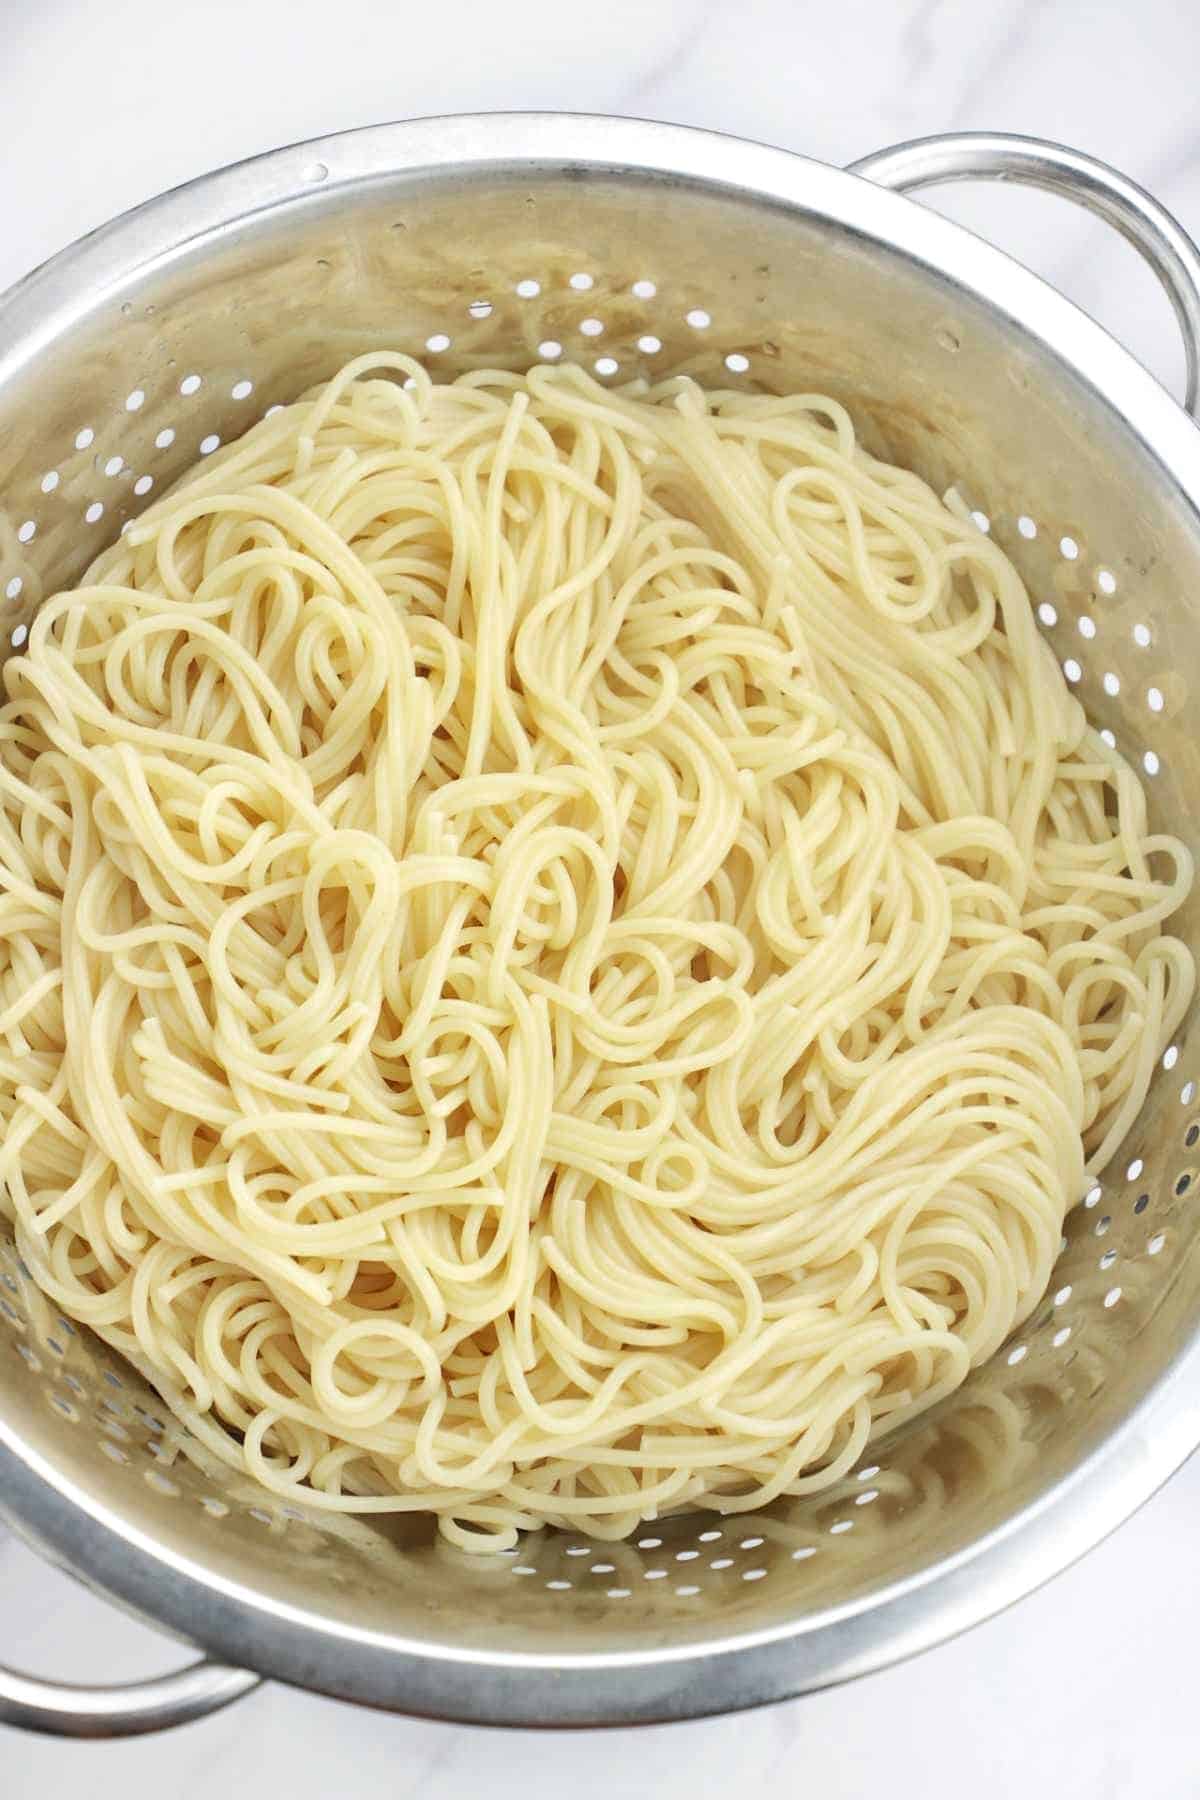 boiled spaghetti in a colander.